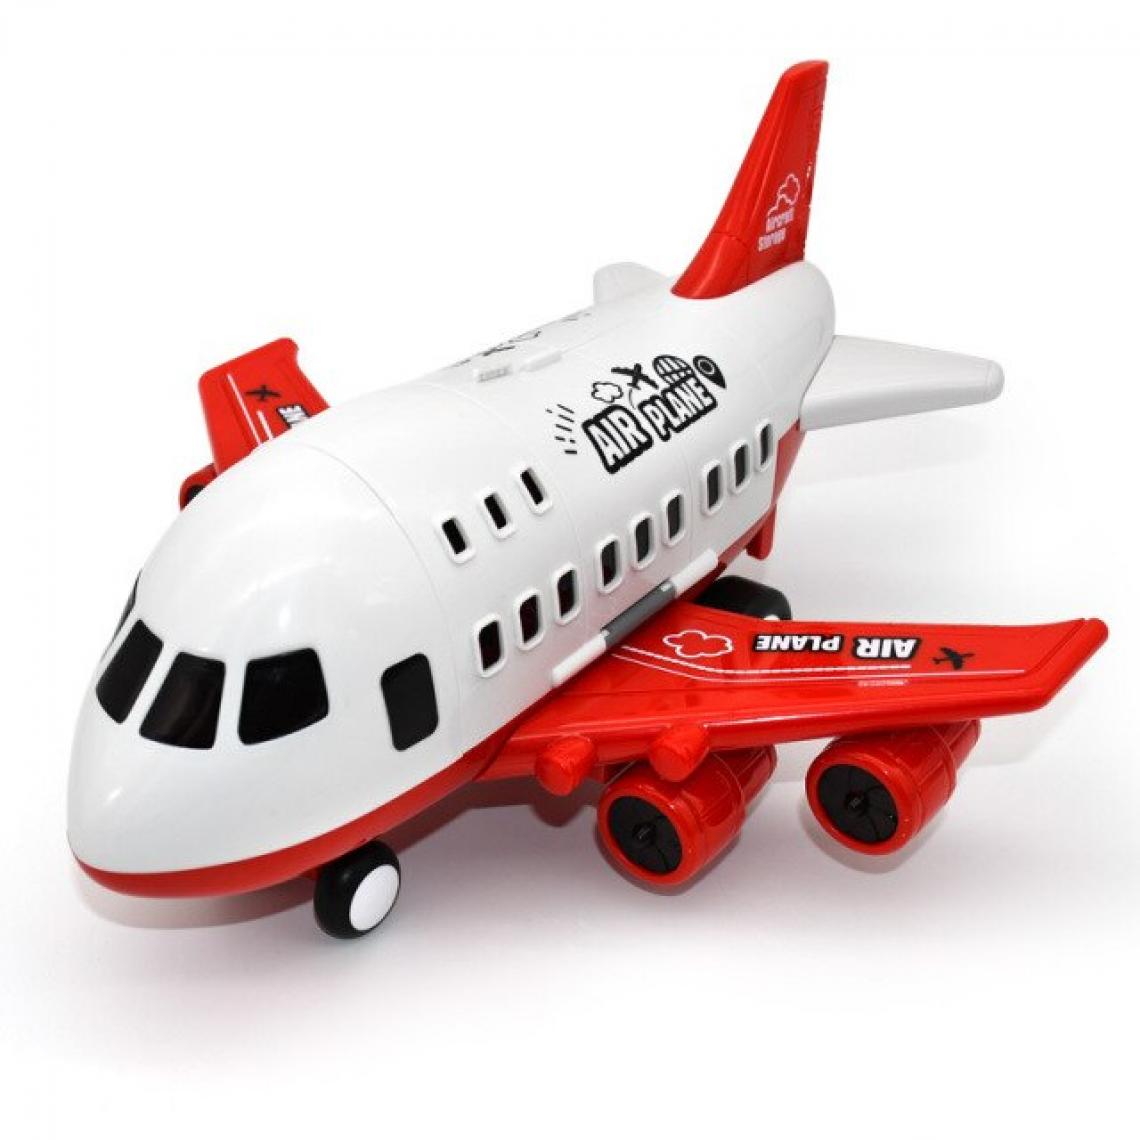 Universal - Un gros avion, un modèle de jouet, un avion de ligne, une navette, une voiture en alliage, un camion.(Rouge) - Voitures